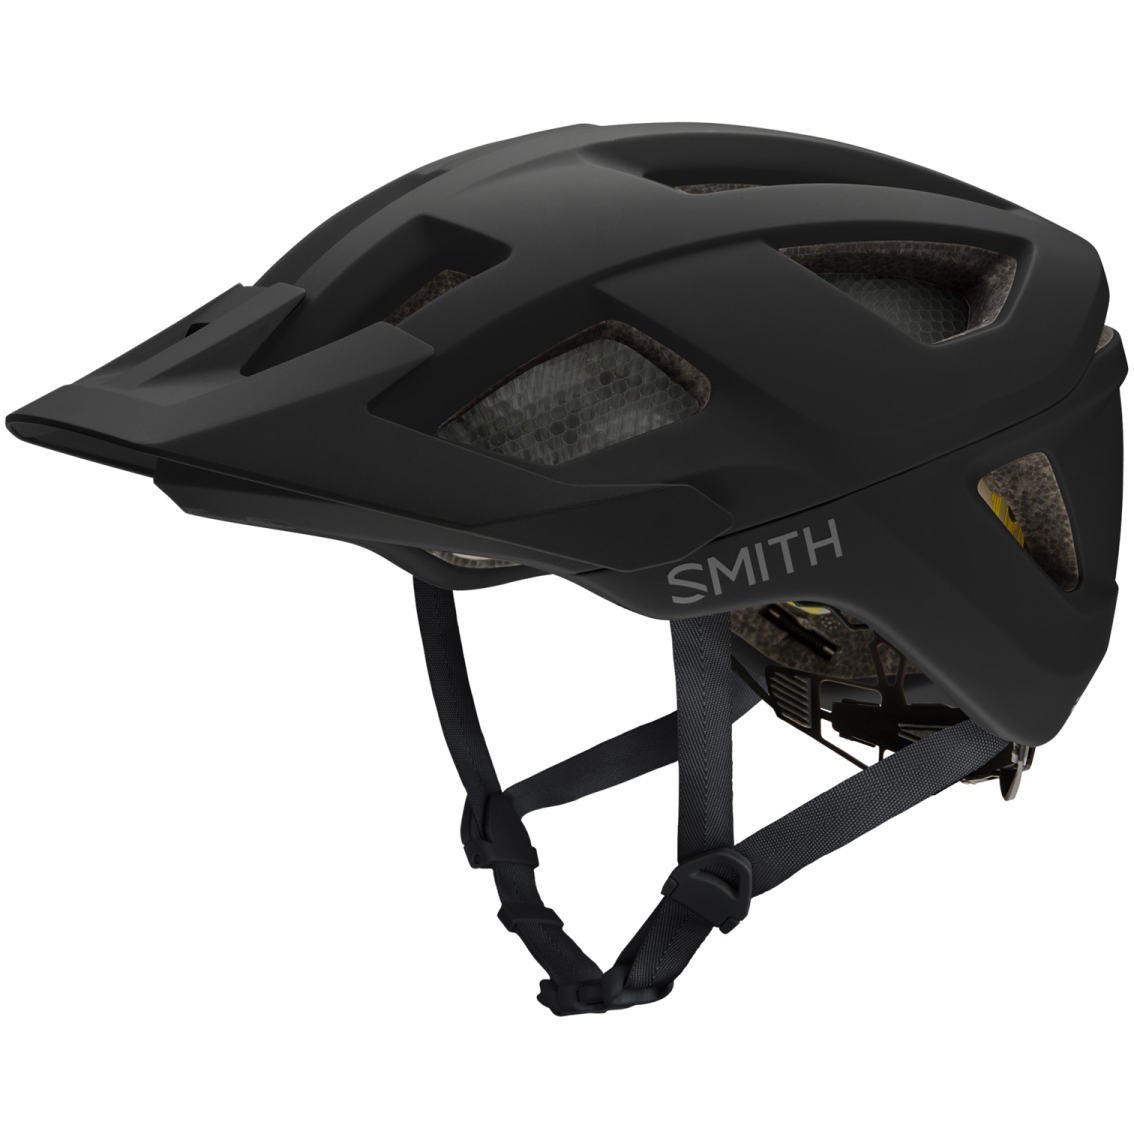 Produktbild von Smith Session MIPS Helm - schwarz